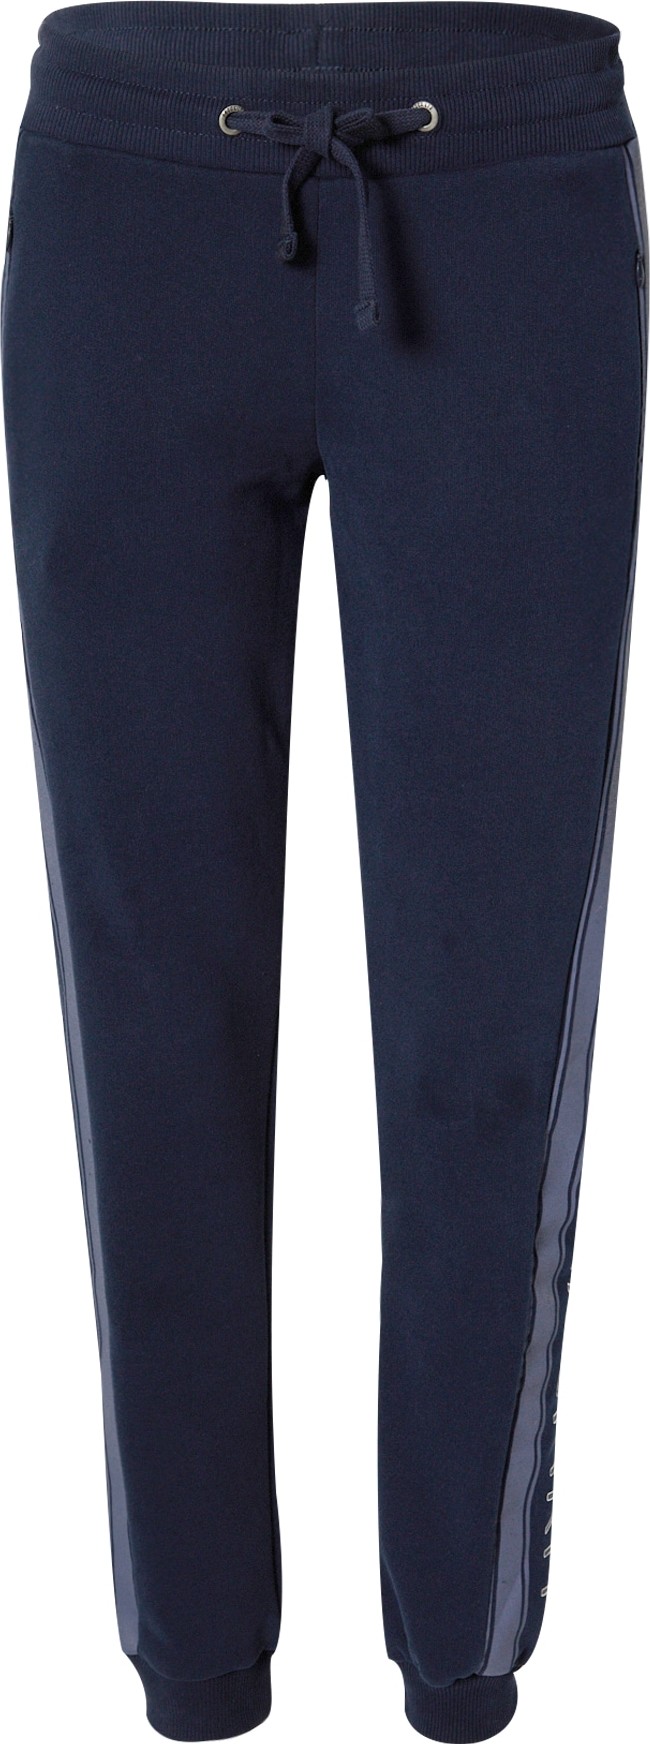 Kalhoty Soccx modrá / námořnická modř / bílá